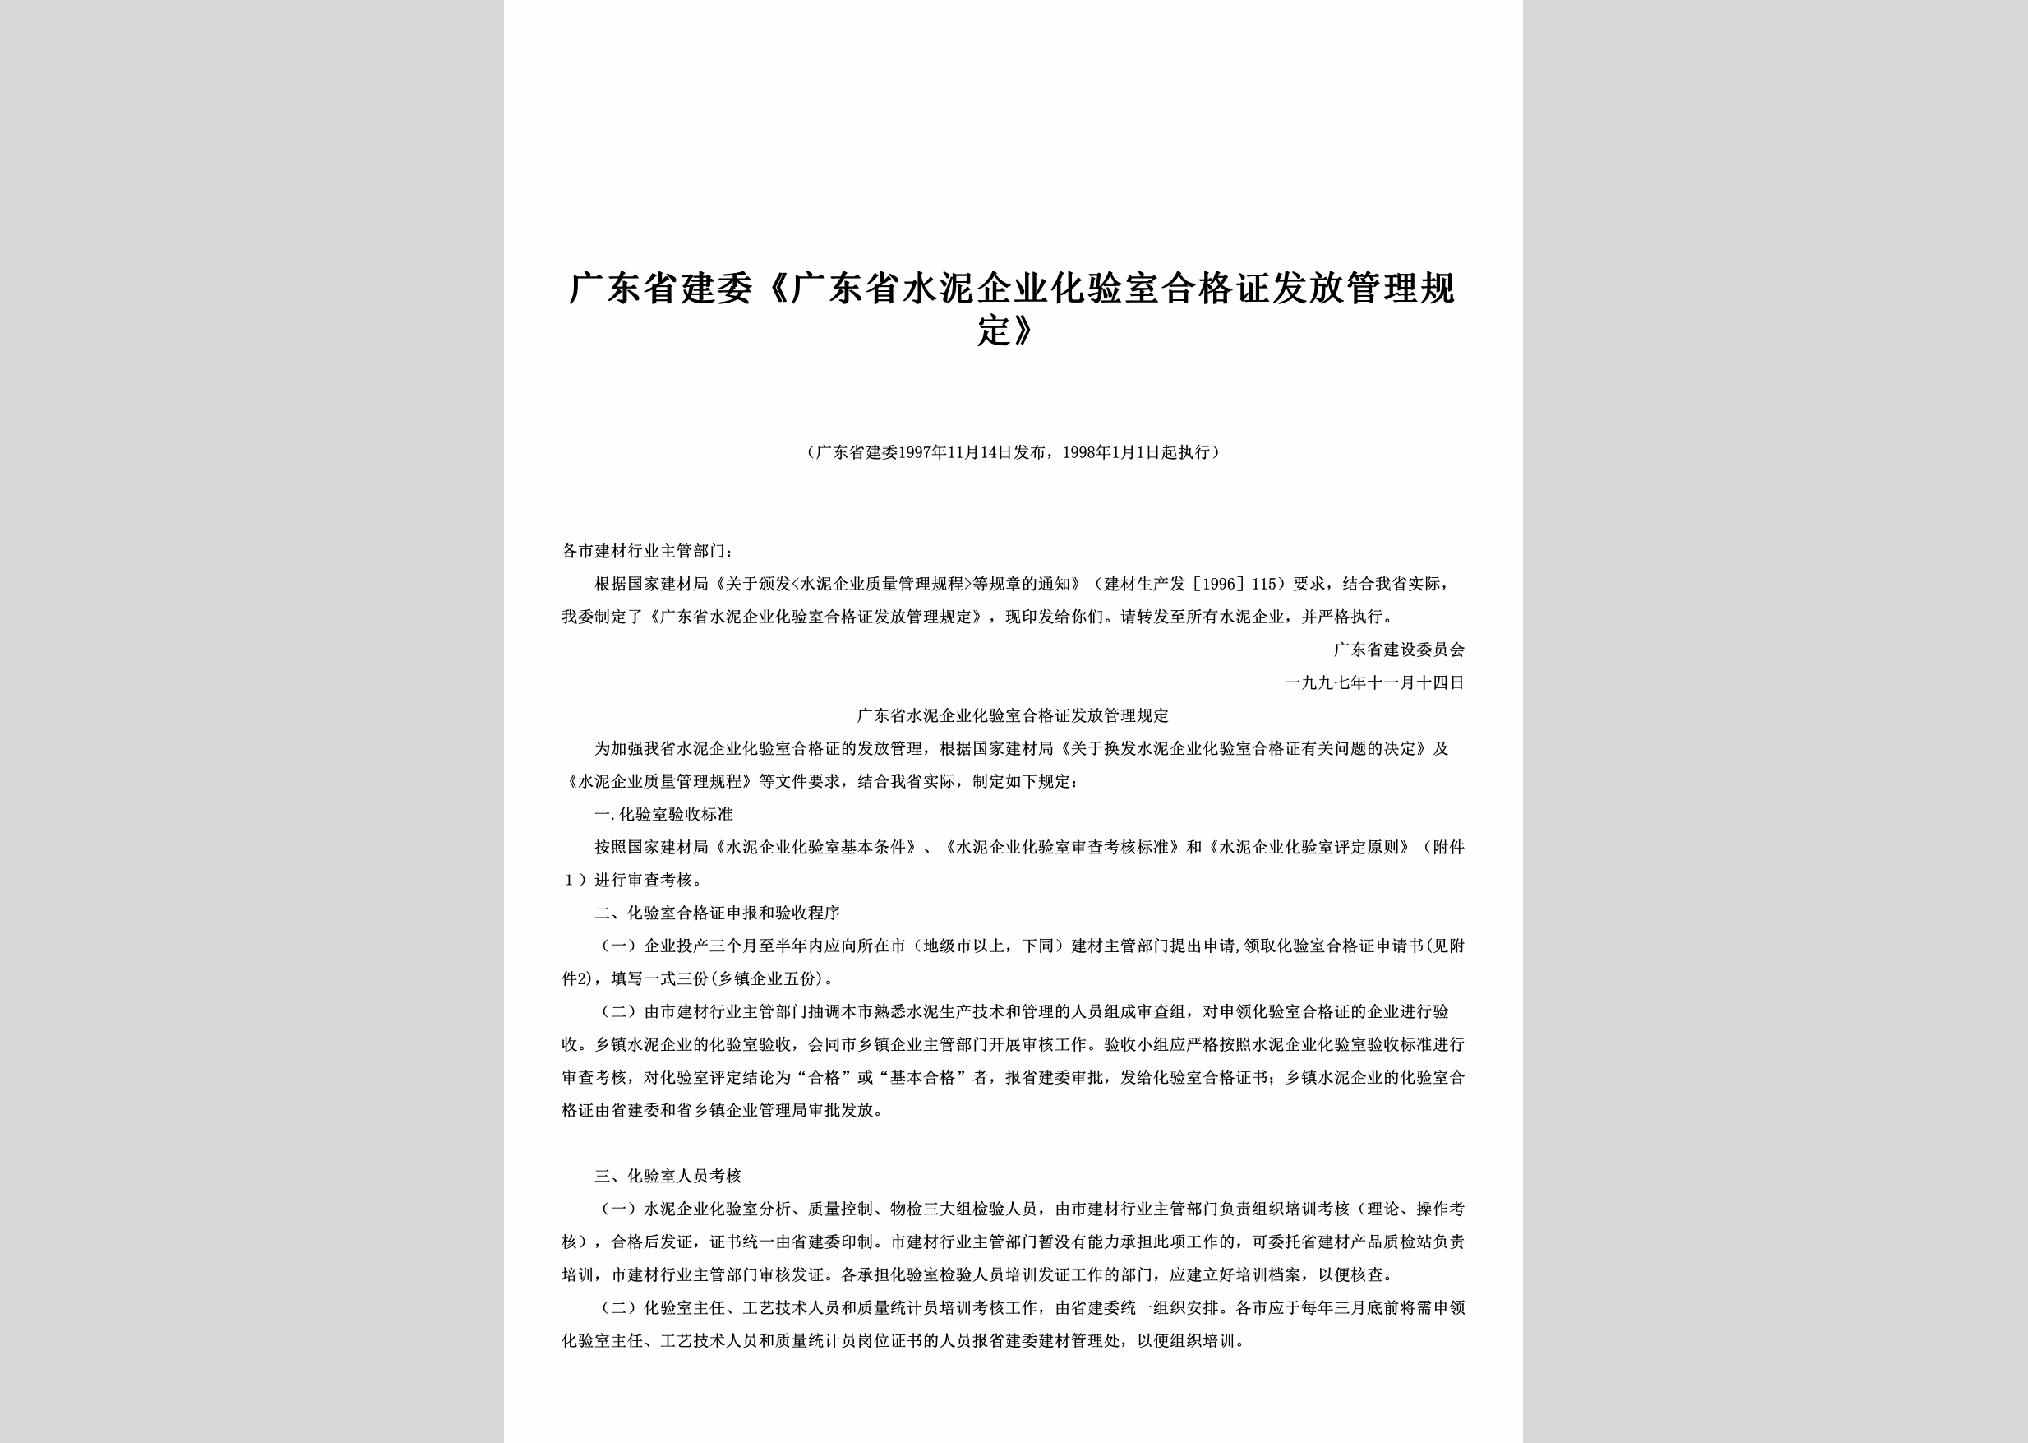 GD-SNHGFFGD-1998：《广东省水泥企业化验室合格证发放管理规定》